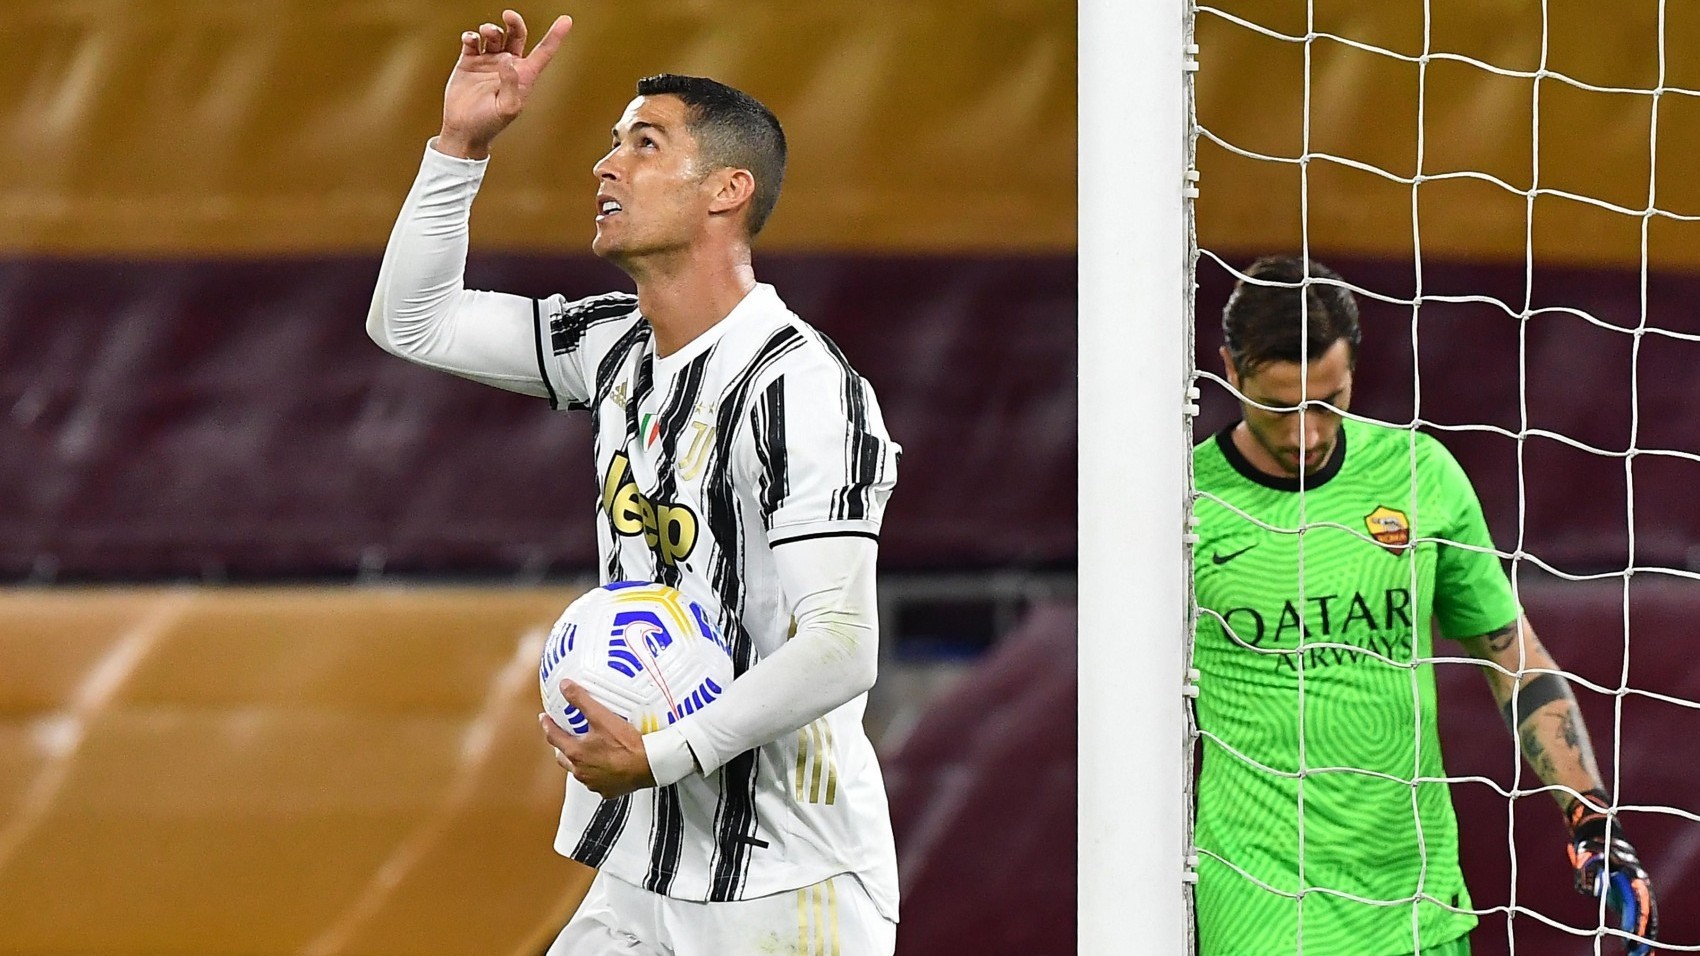 Spezia-Juventus : Pour son retour, Cristiano Ronaldo fait trembler les filets (Vidéo)